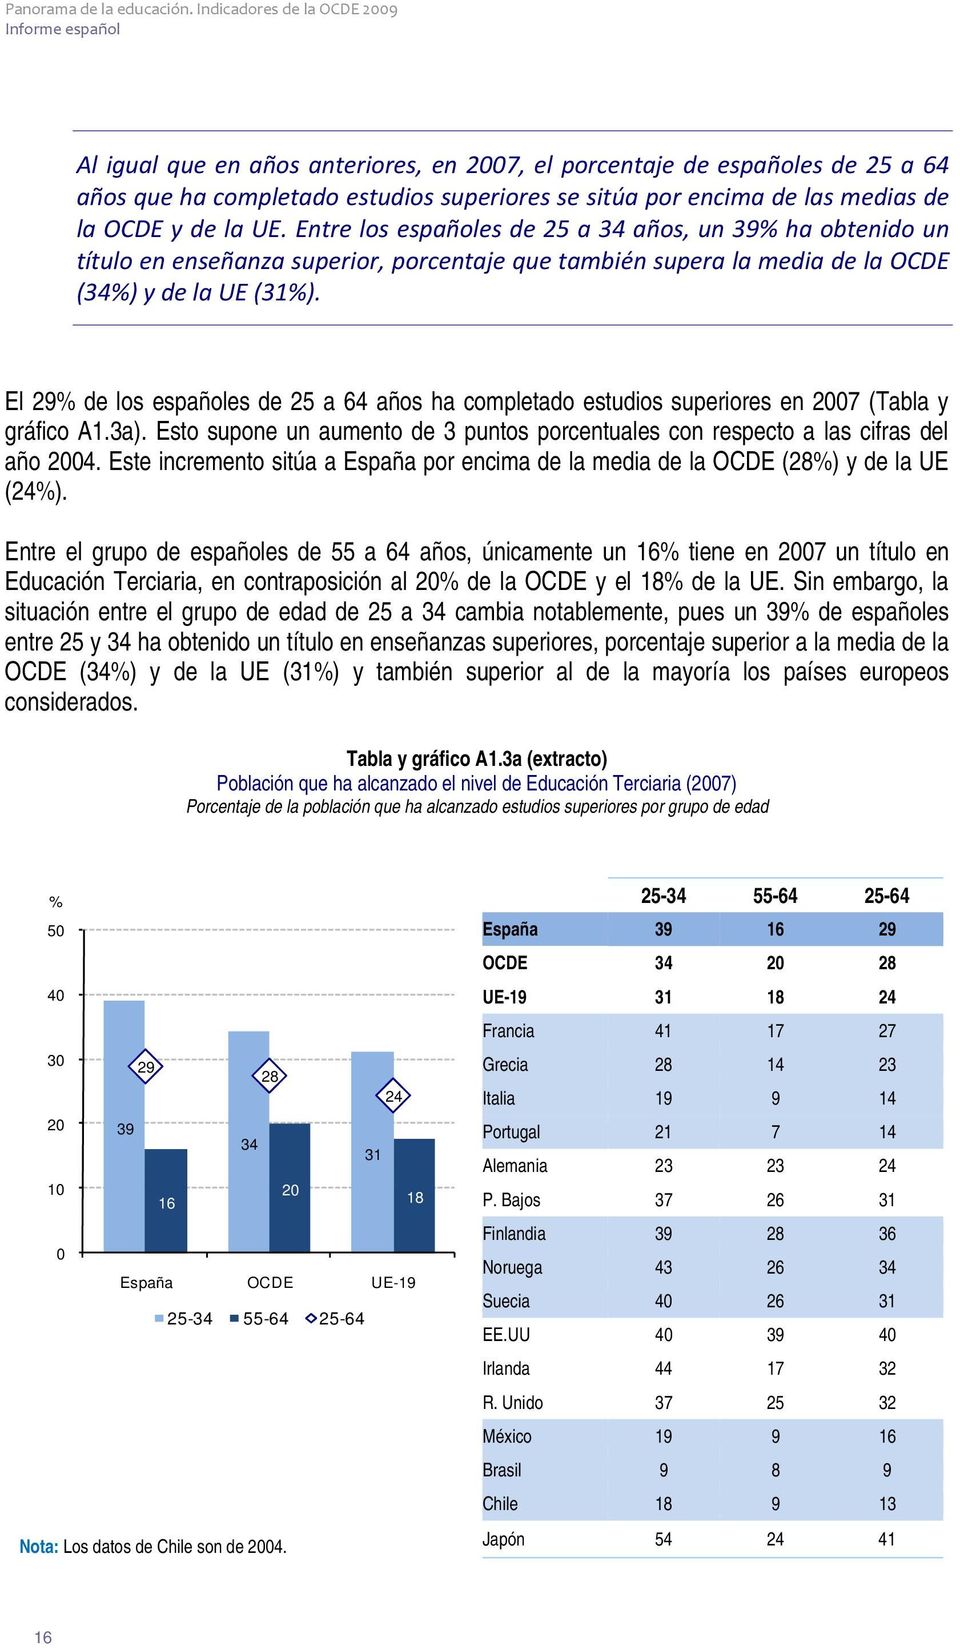 El 29% de los españoles de 25 a 64 años ha completado estudios superiores en 2007 (Tabla y gráfico A1.3a). Esto supone un aumento de 3 puntos porcentuales con respecto a las cifras del año 2004.